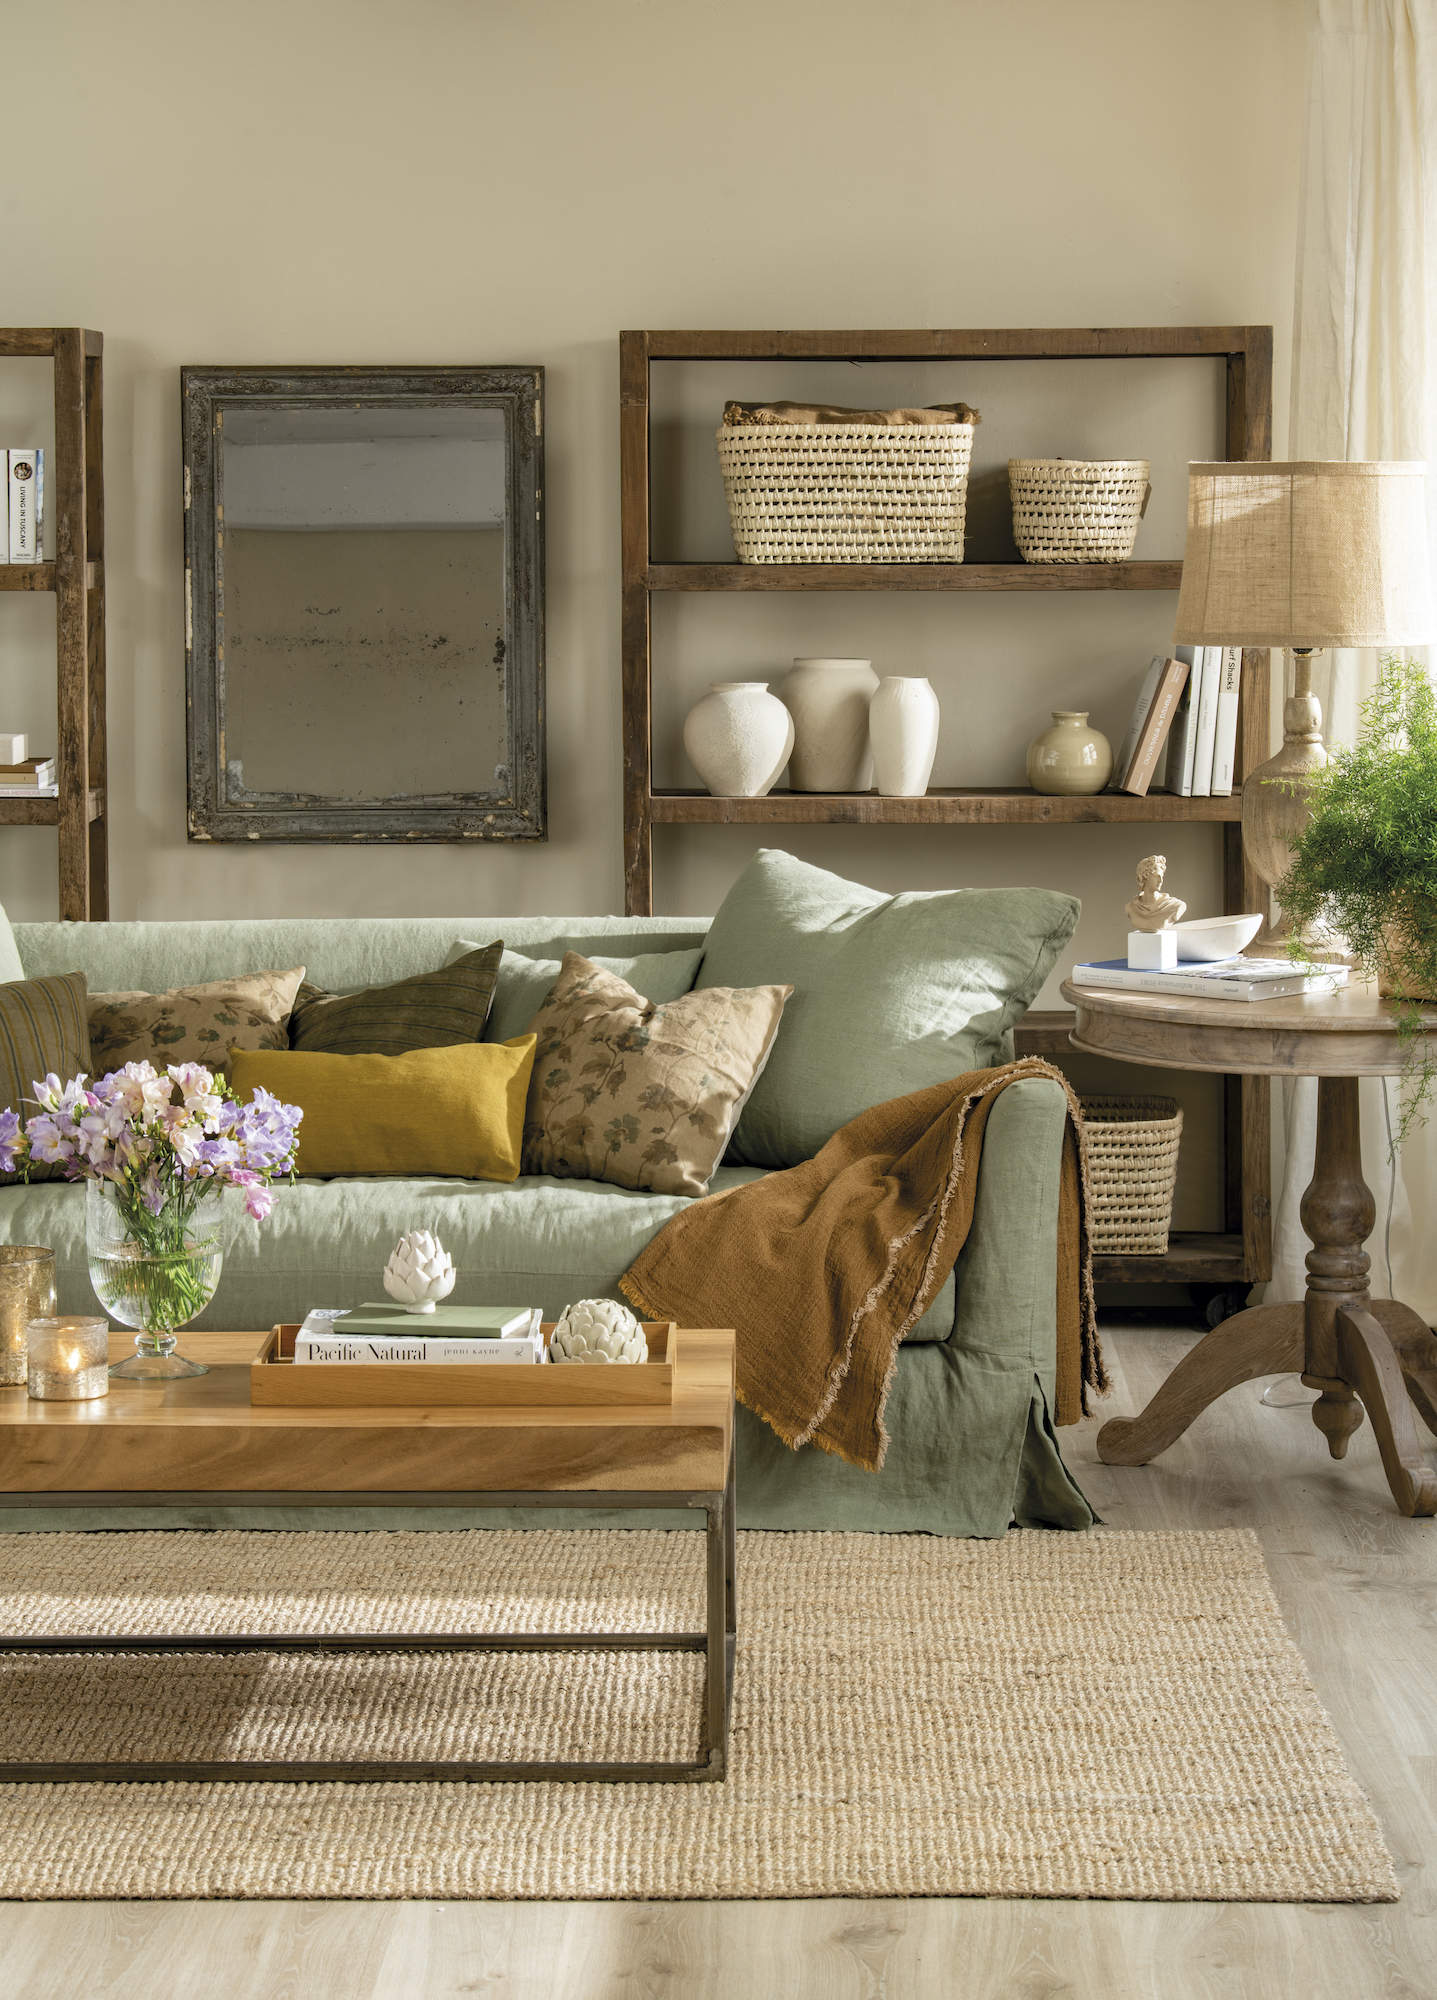 sofa verde con cojines y plaid marrones